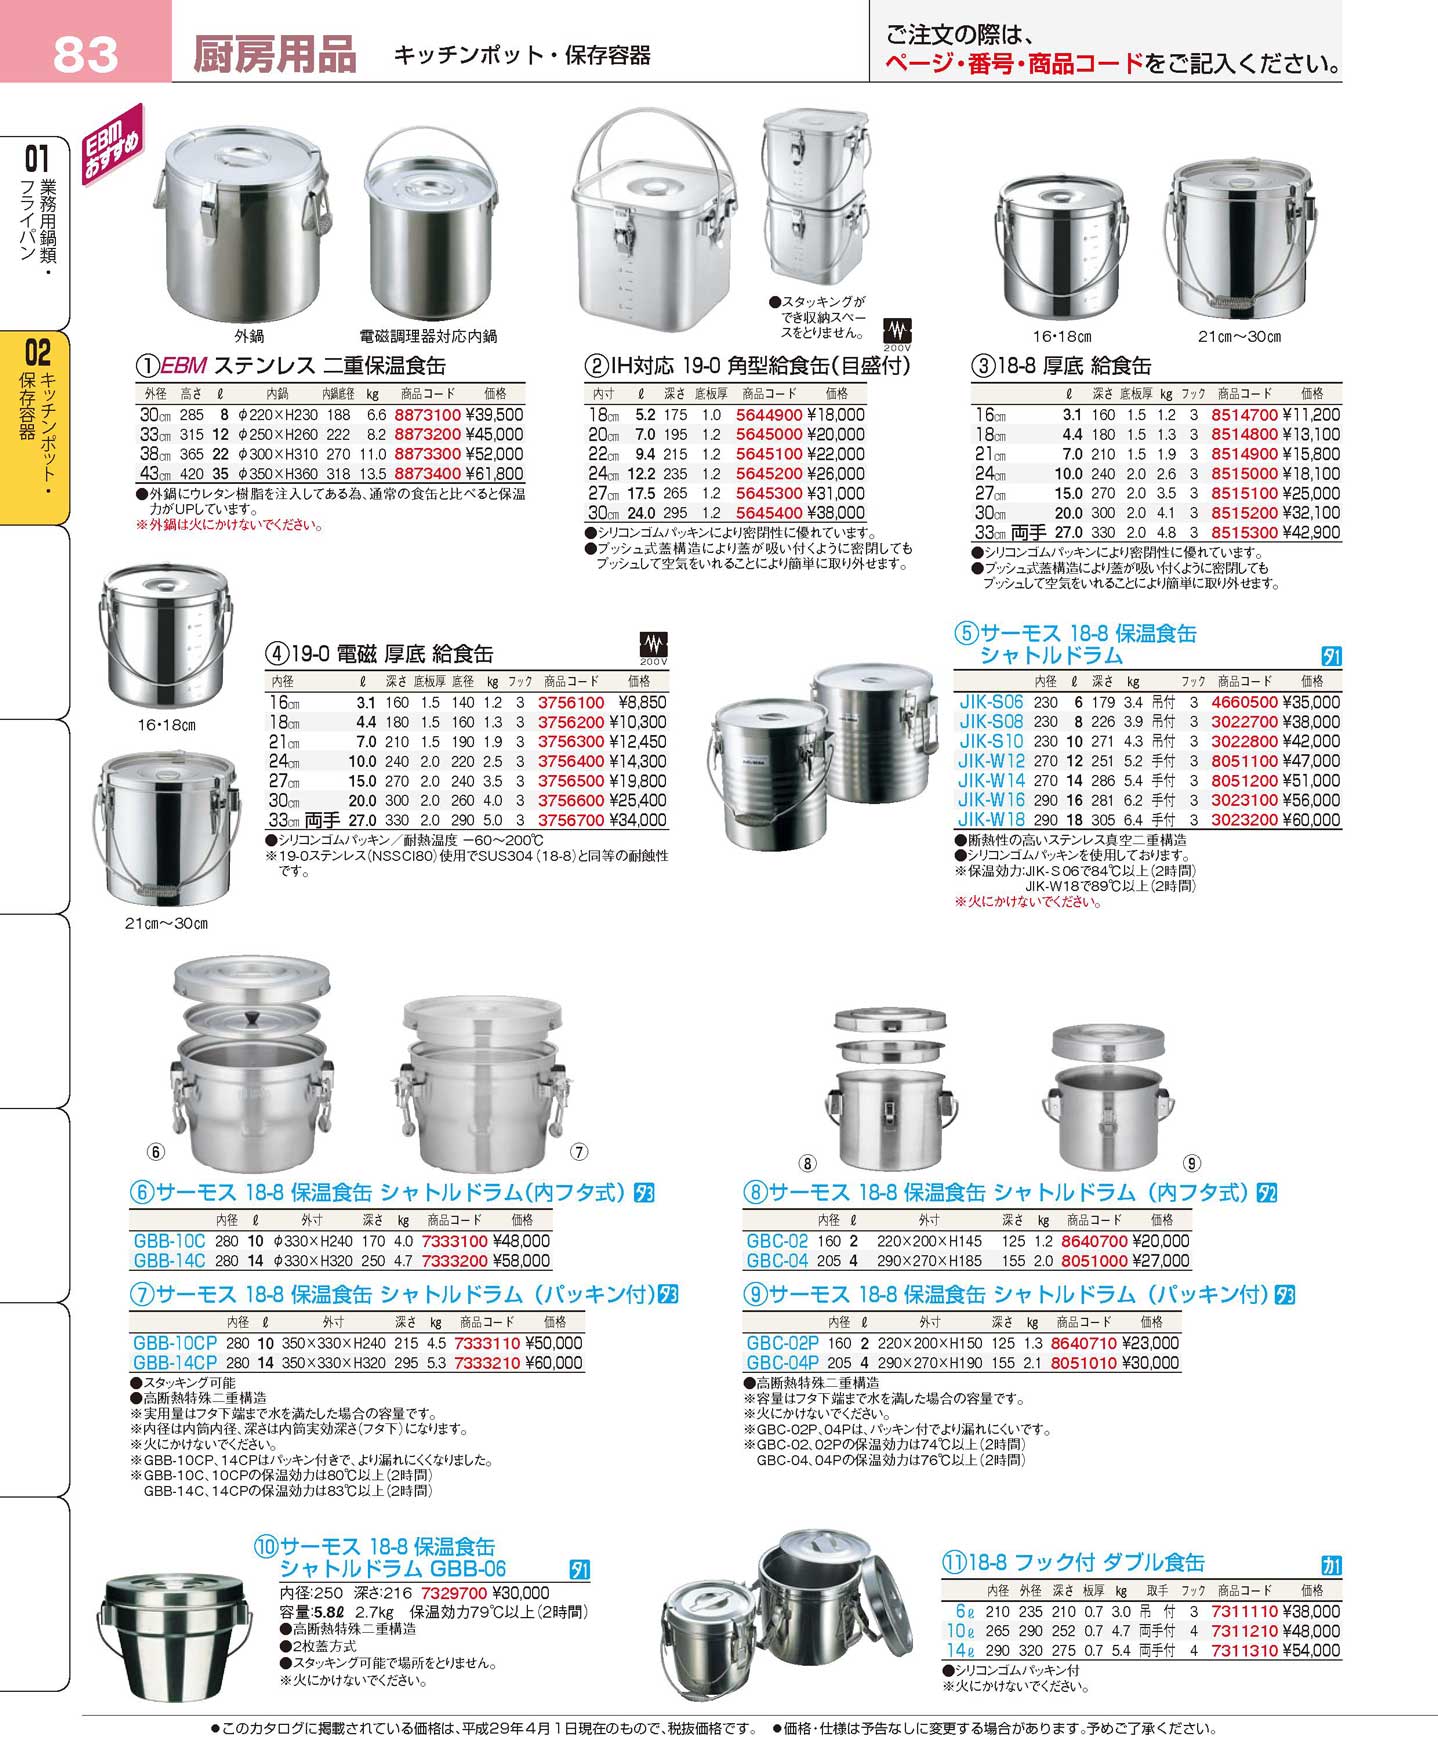 18-8高性能保温食缶シャトルドラム 内フタ付 GBK-14C 品番 業務用厨房